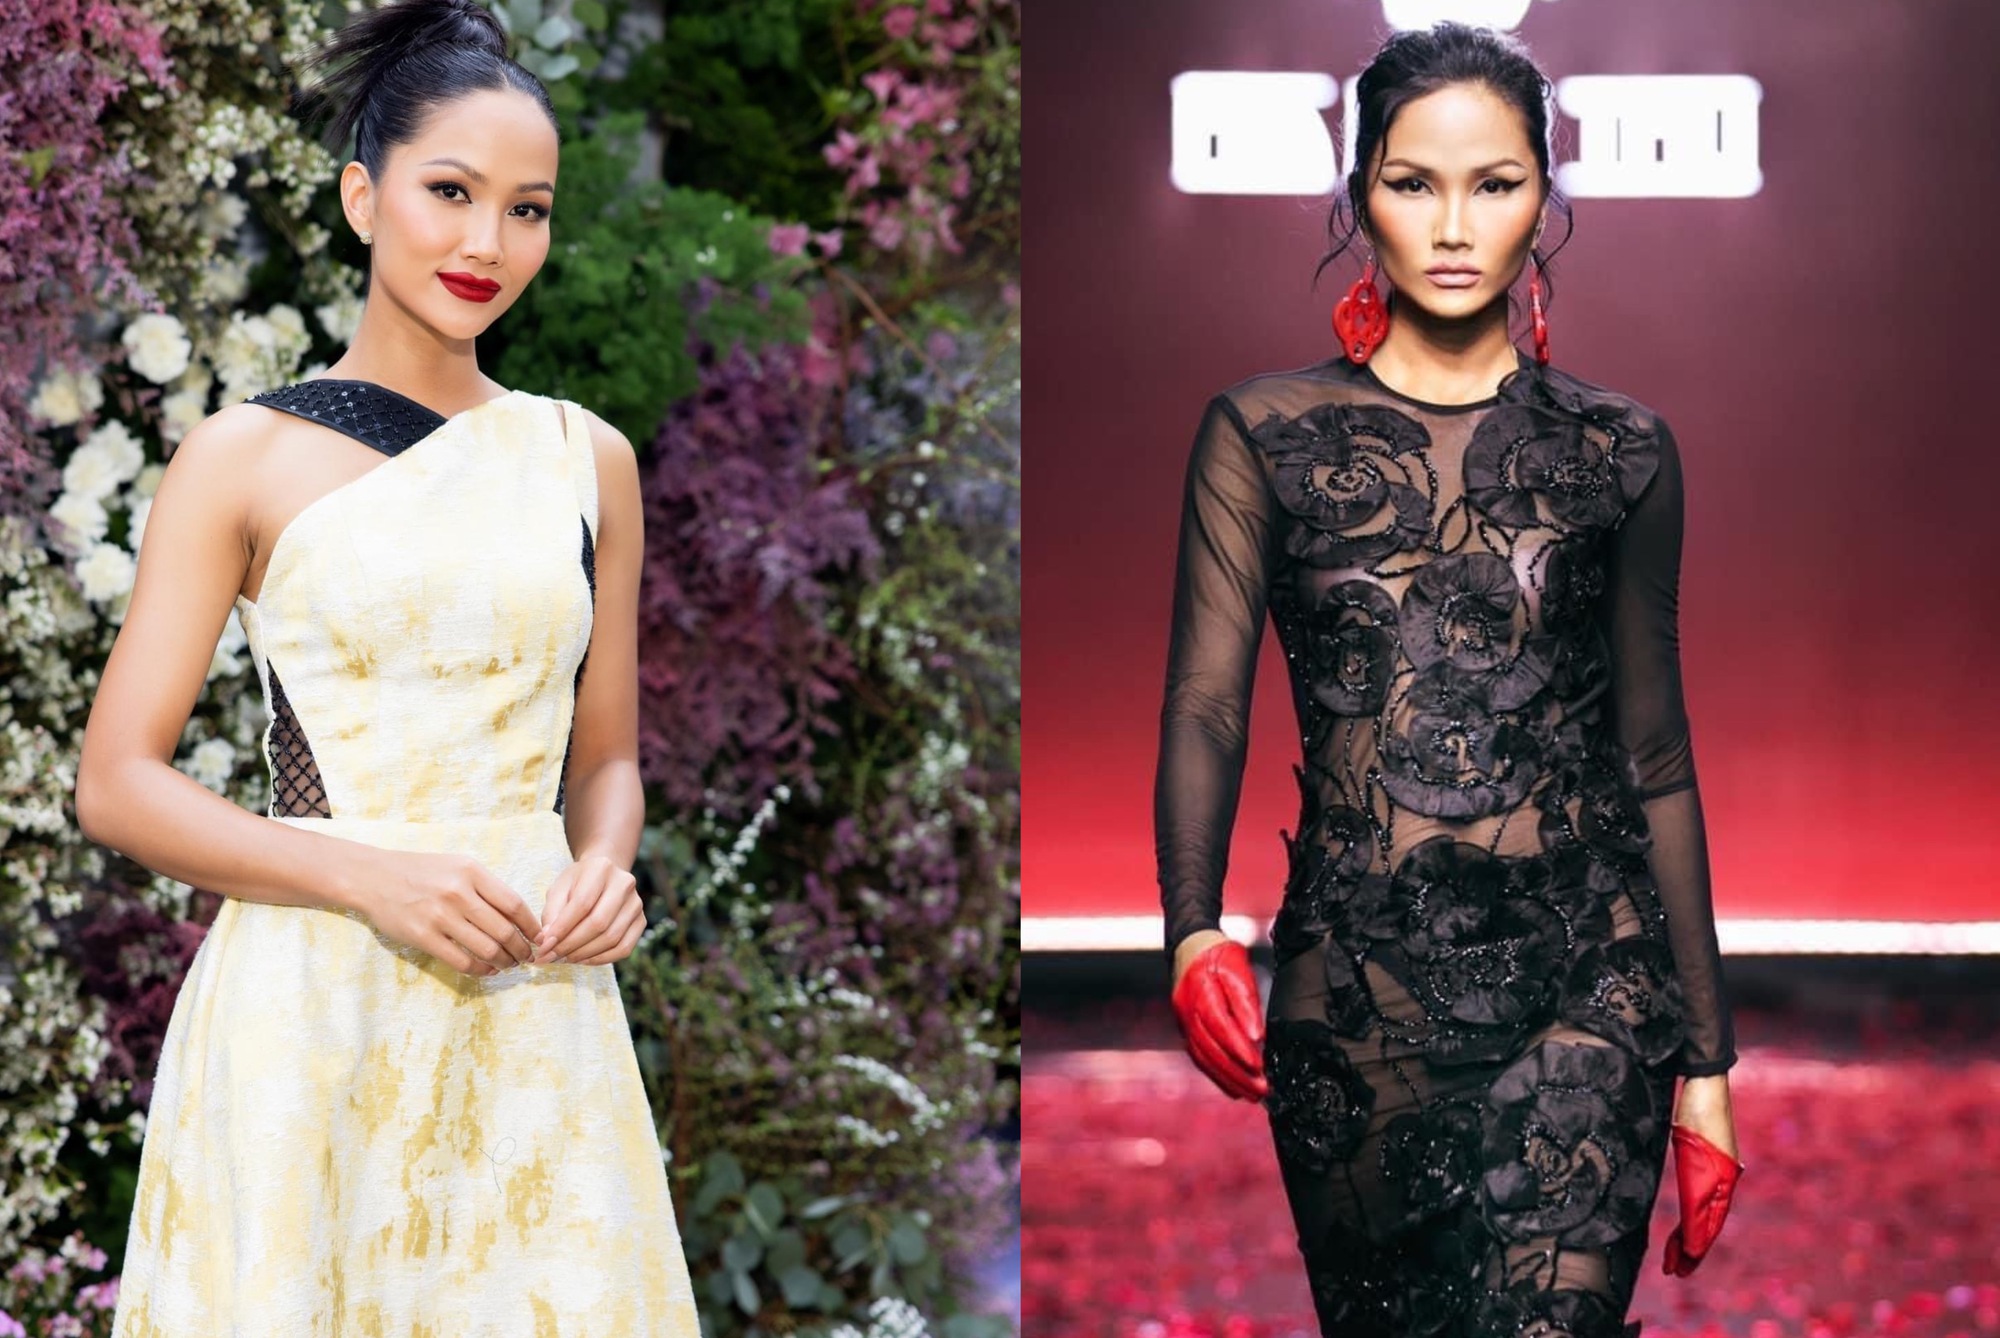 Top 3 Hoa hậu Hoàn vũ Việt Nam 2017 hiện tại: Ngày càng nhuận sắc, 1 người đẹp chuẩn bị lên chức mẹ bỉm - Ảnh 2.